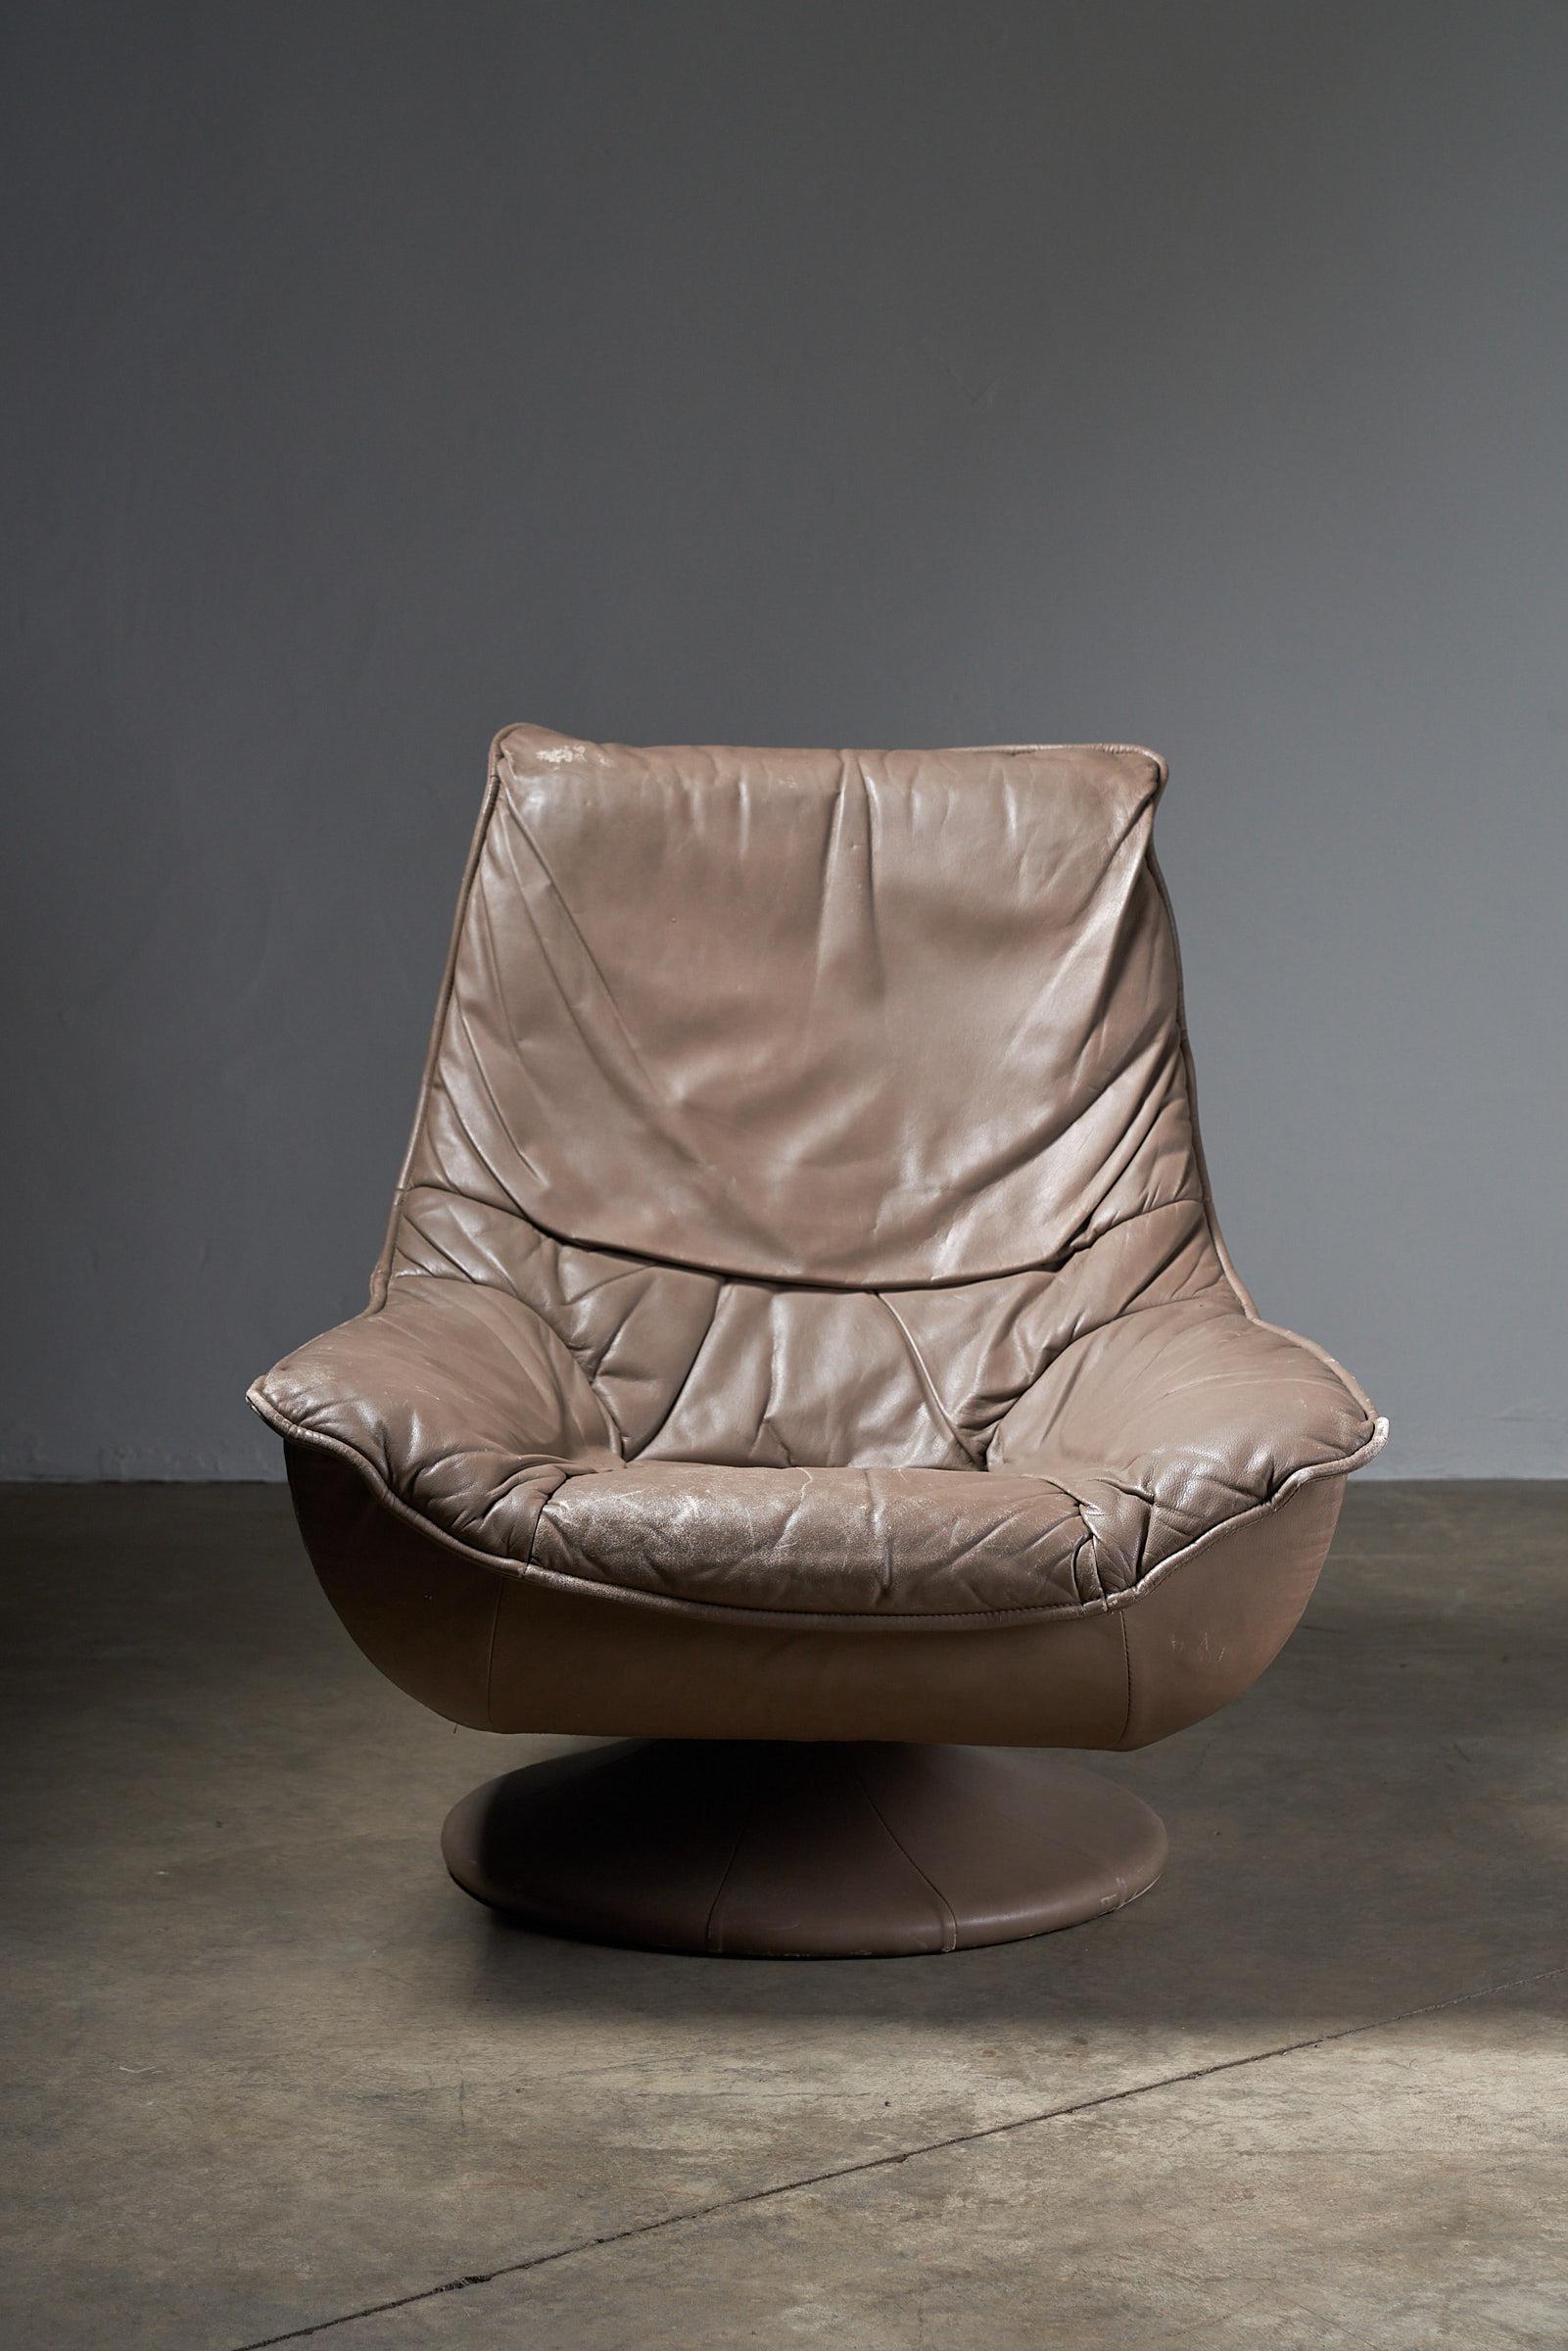 Entdecken Sie zeitlose Raffinesse mit unserem Elegant Swivel Lounge Chair aus luxuriösem braunem Leder. Mit seinem ergonomischen Design und der reichhaltigen Lederpolsterung verbindet dieses ausgezeichnete Stück nahtlos Komfort und Stil. Die